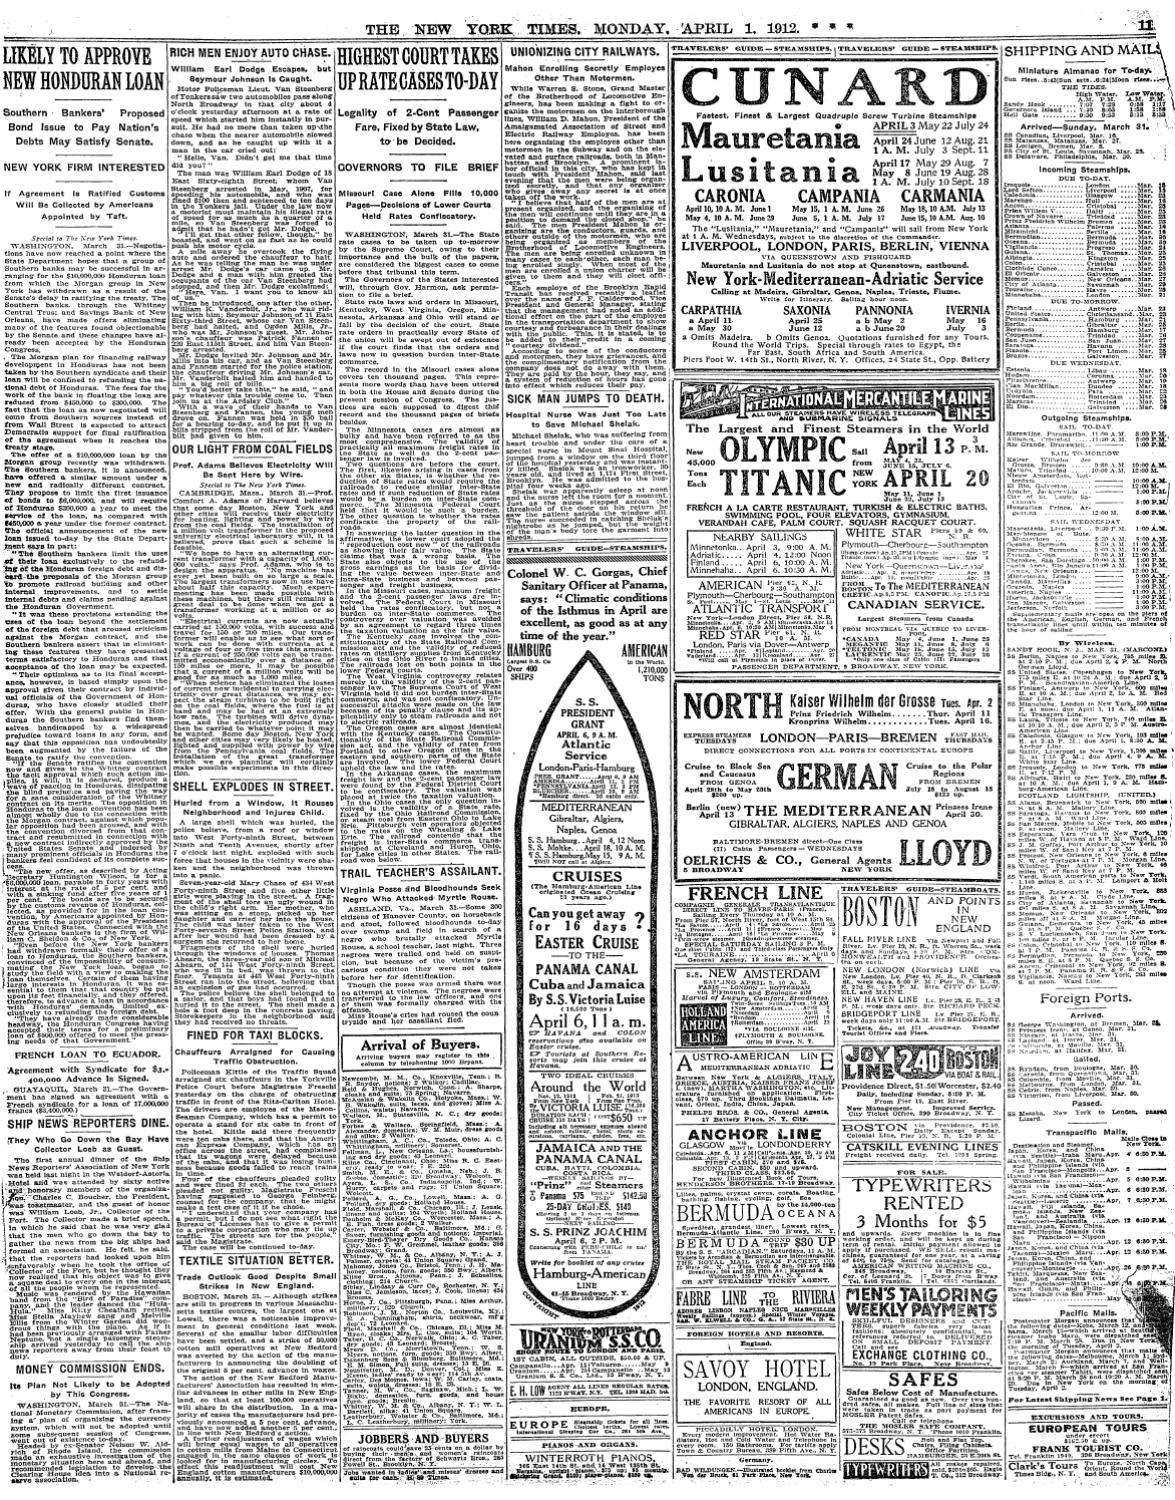 Garten Ebnen Schön Titanic Newspaper Articles April 1 April 14 1912 by Bacm